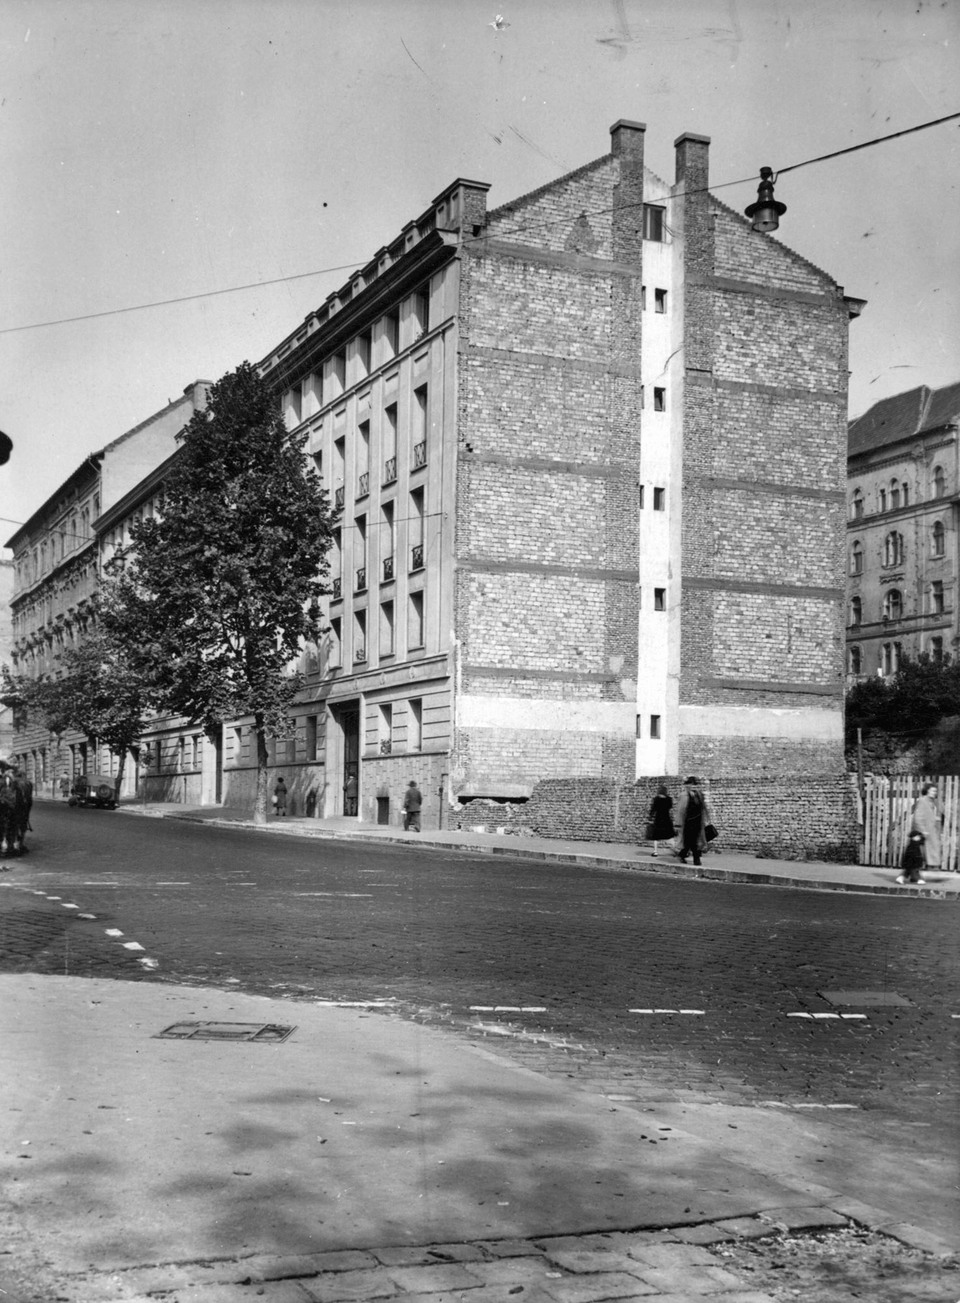 Az Attila út - Alagút utca kereszteződése 1959-ben, a foghíj beépítése előtt. Fortepan / Budapest Főváros Levéltára. Levéltári jelzet: HU_BFL_XV_19_c_11